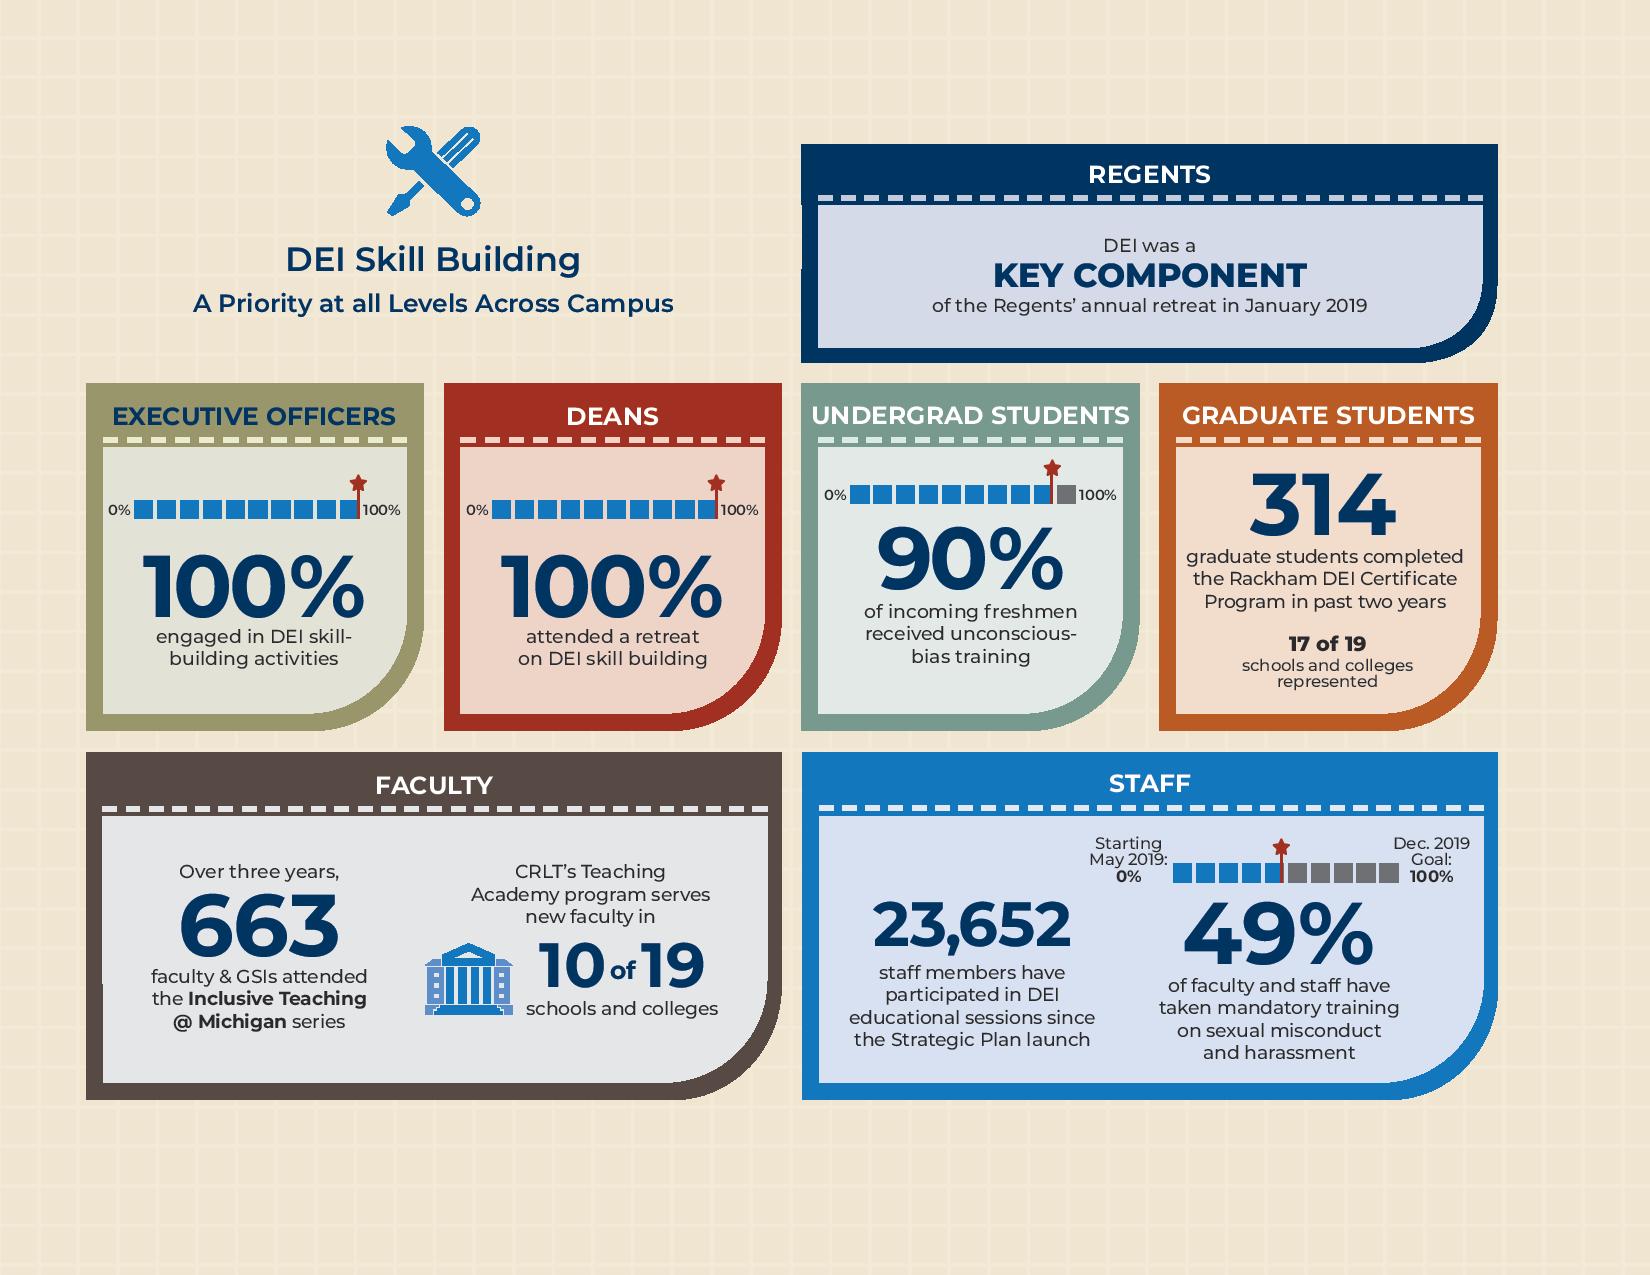 DEI SKill Building infographic